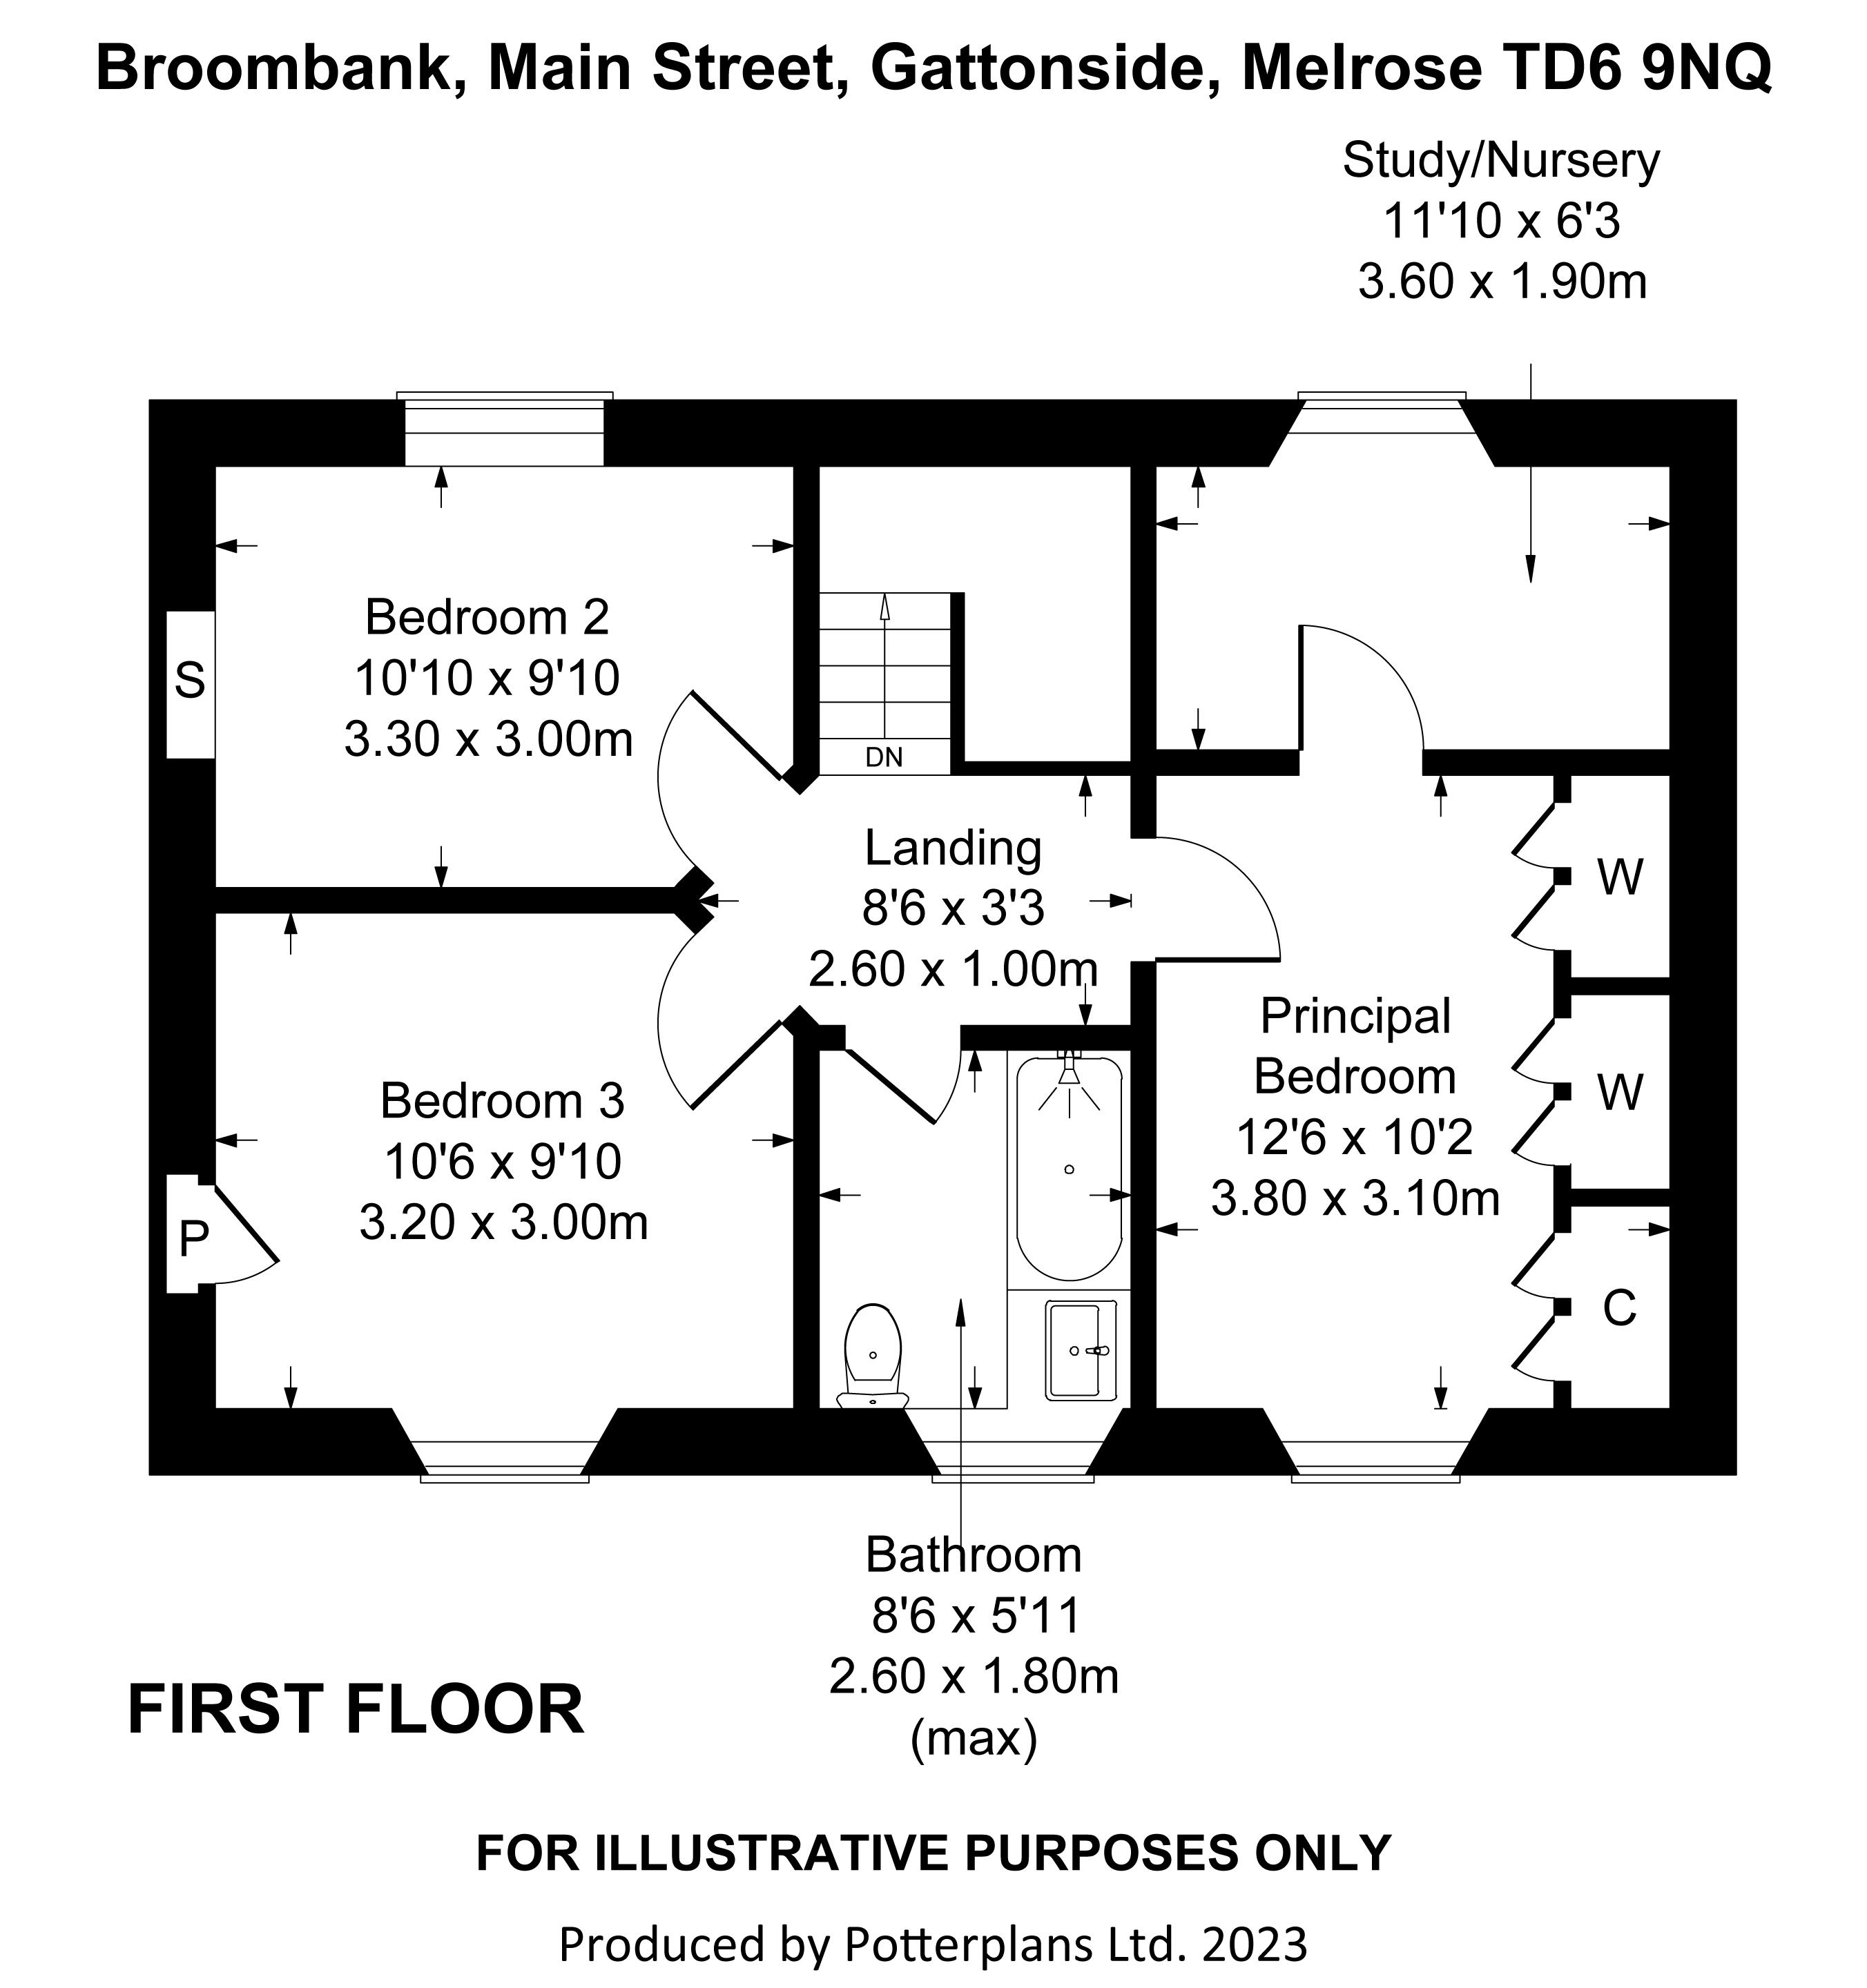 Broombank First Floor